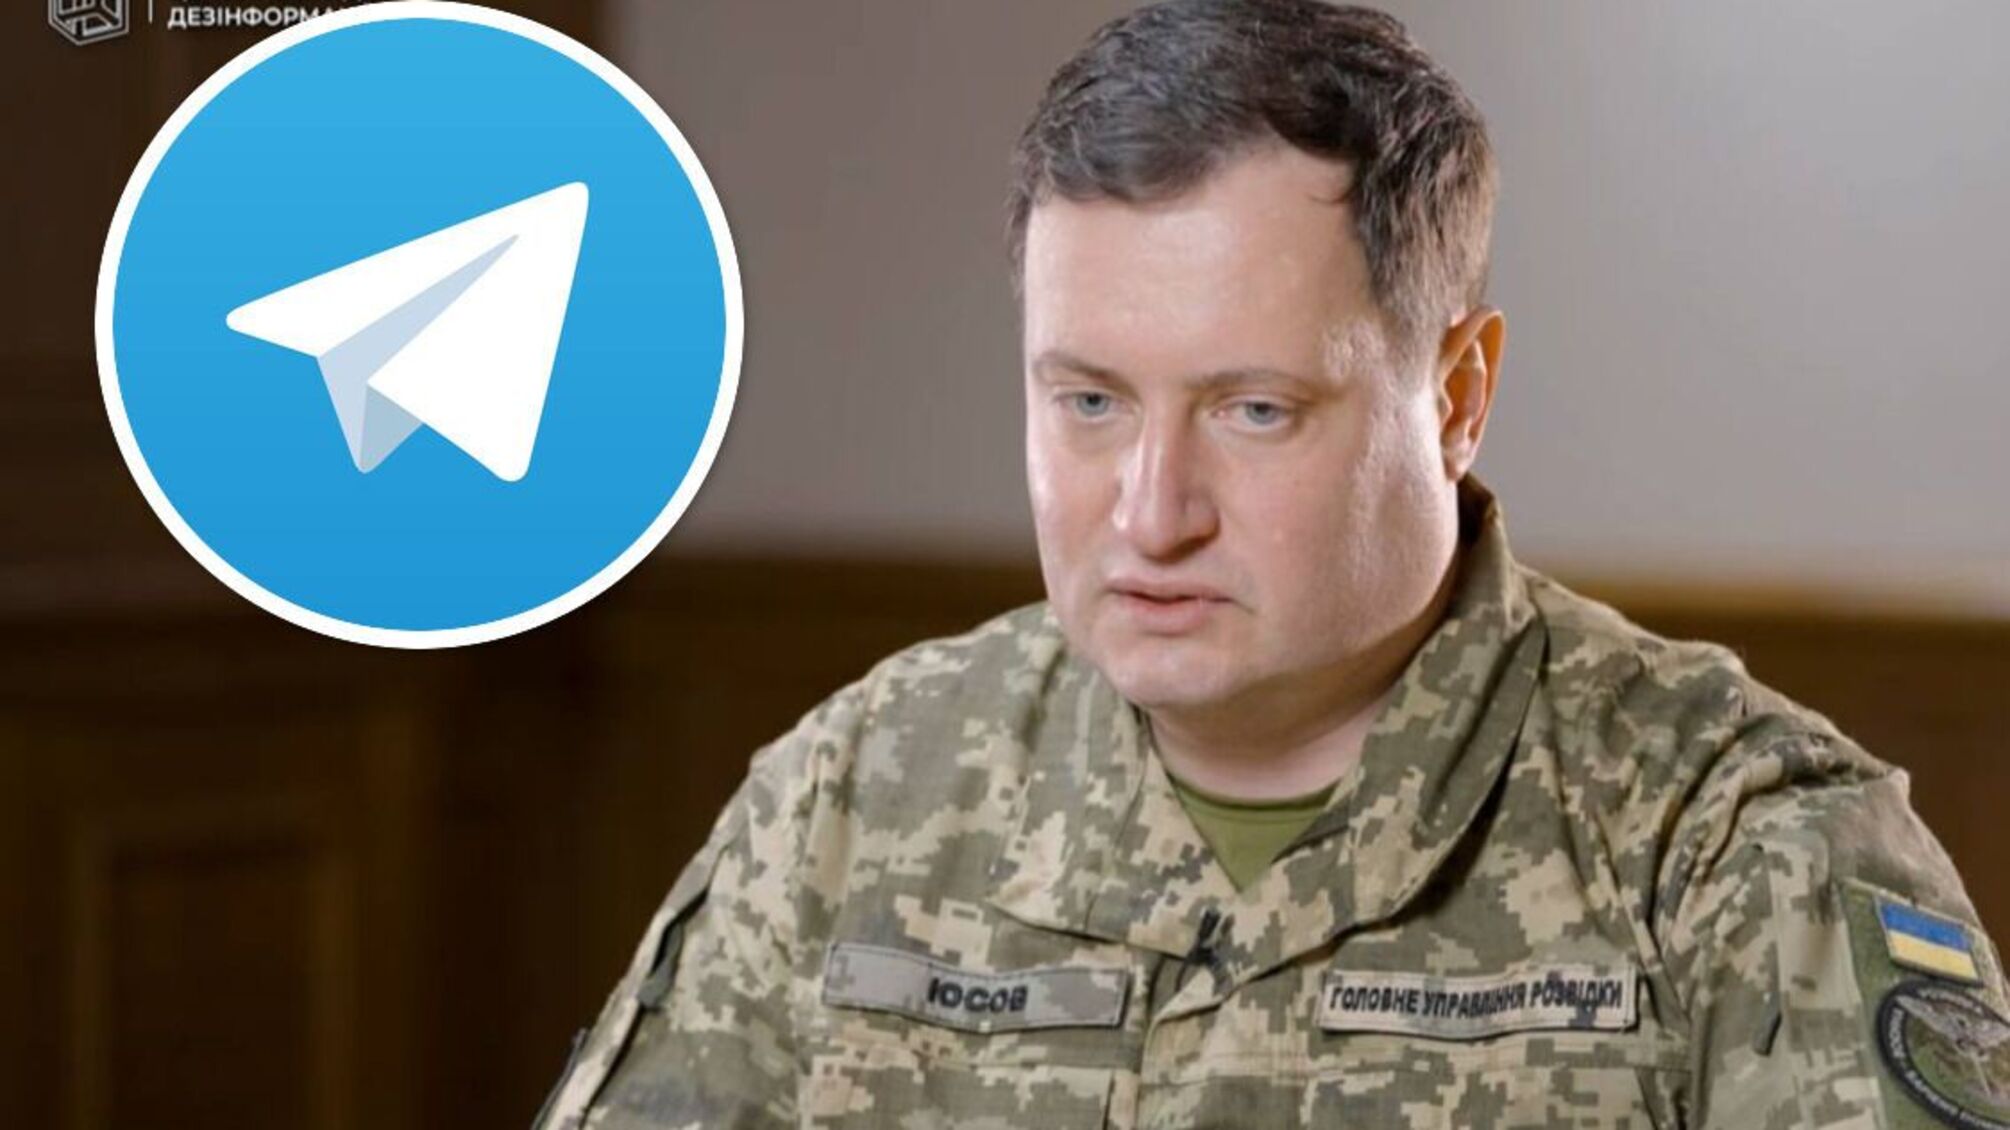 Зафиксированы случаи сотрудничества со спецслужбами РФ – ГУР о запрете Telegram в Украине